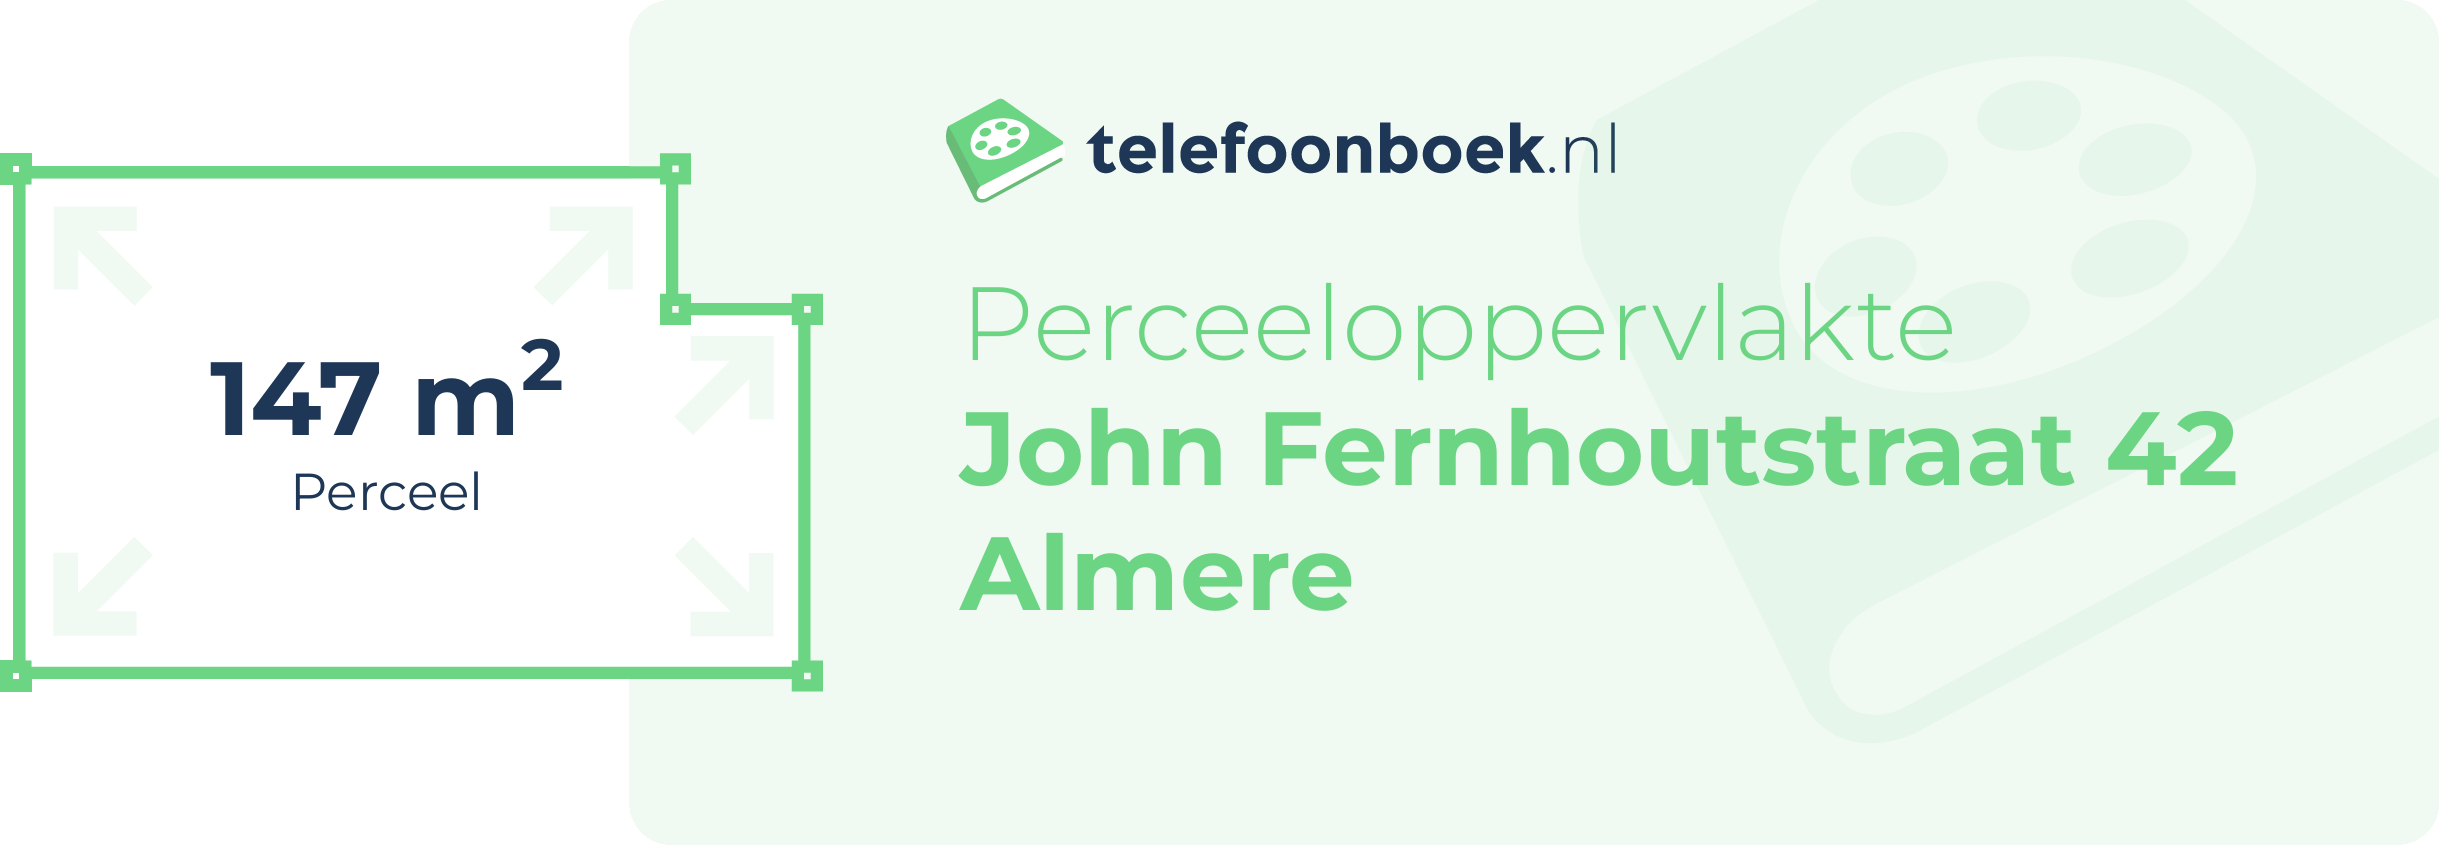 Perceeloppervlakte John Fernhoutstraat 42 Almere